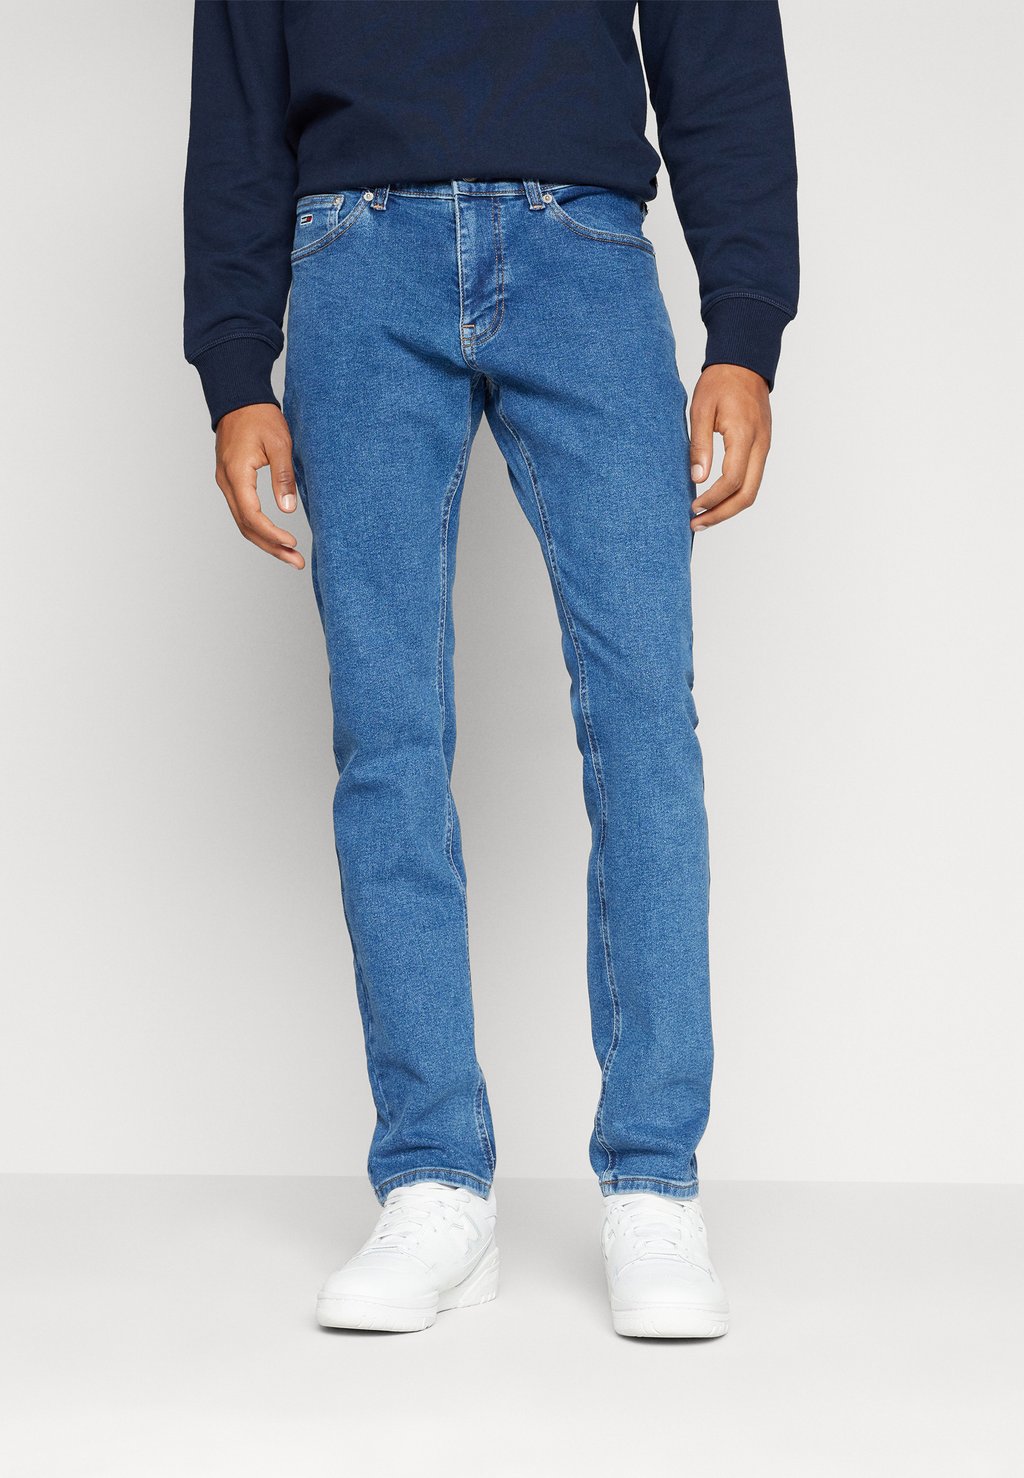 Джинсы приталенного кроя Scanton Tommy Jeans, цвет denim medium джинсы свободного кроя tommy jeans цвет denim medium